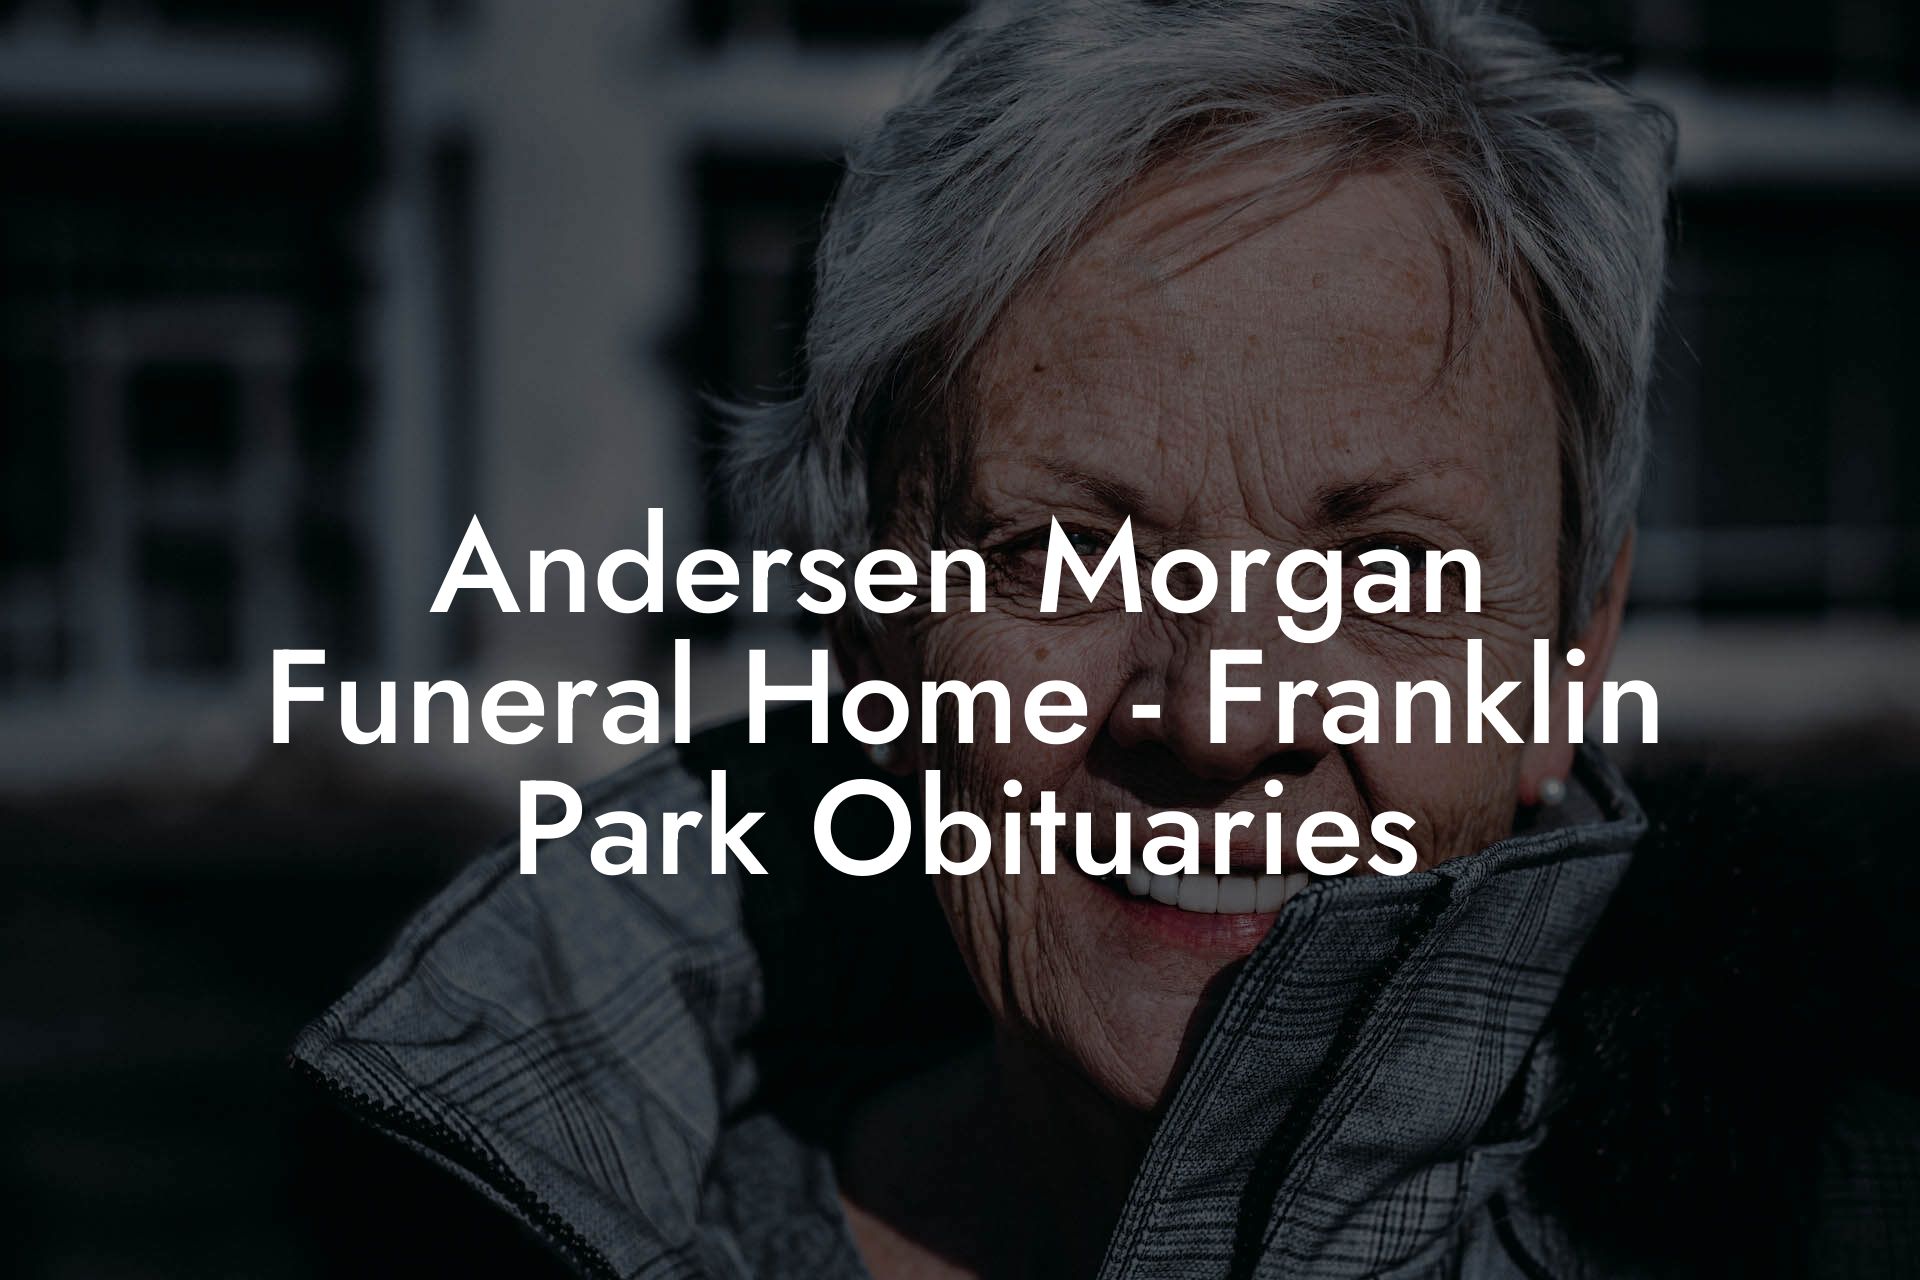 Andersen Morgan Funeral Home - Franklin Park Obituaries